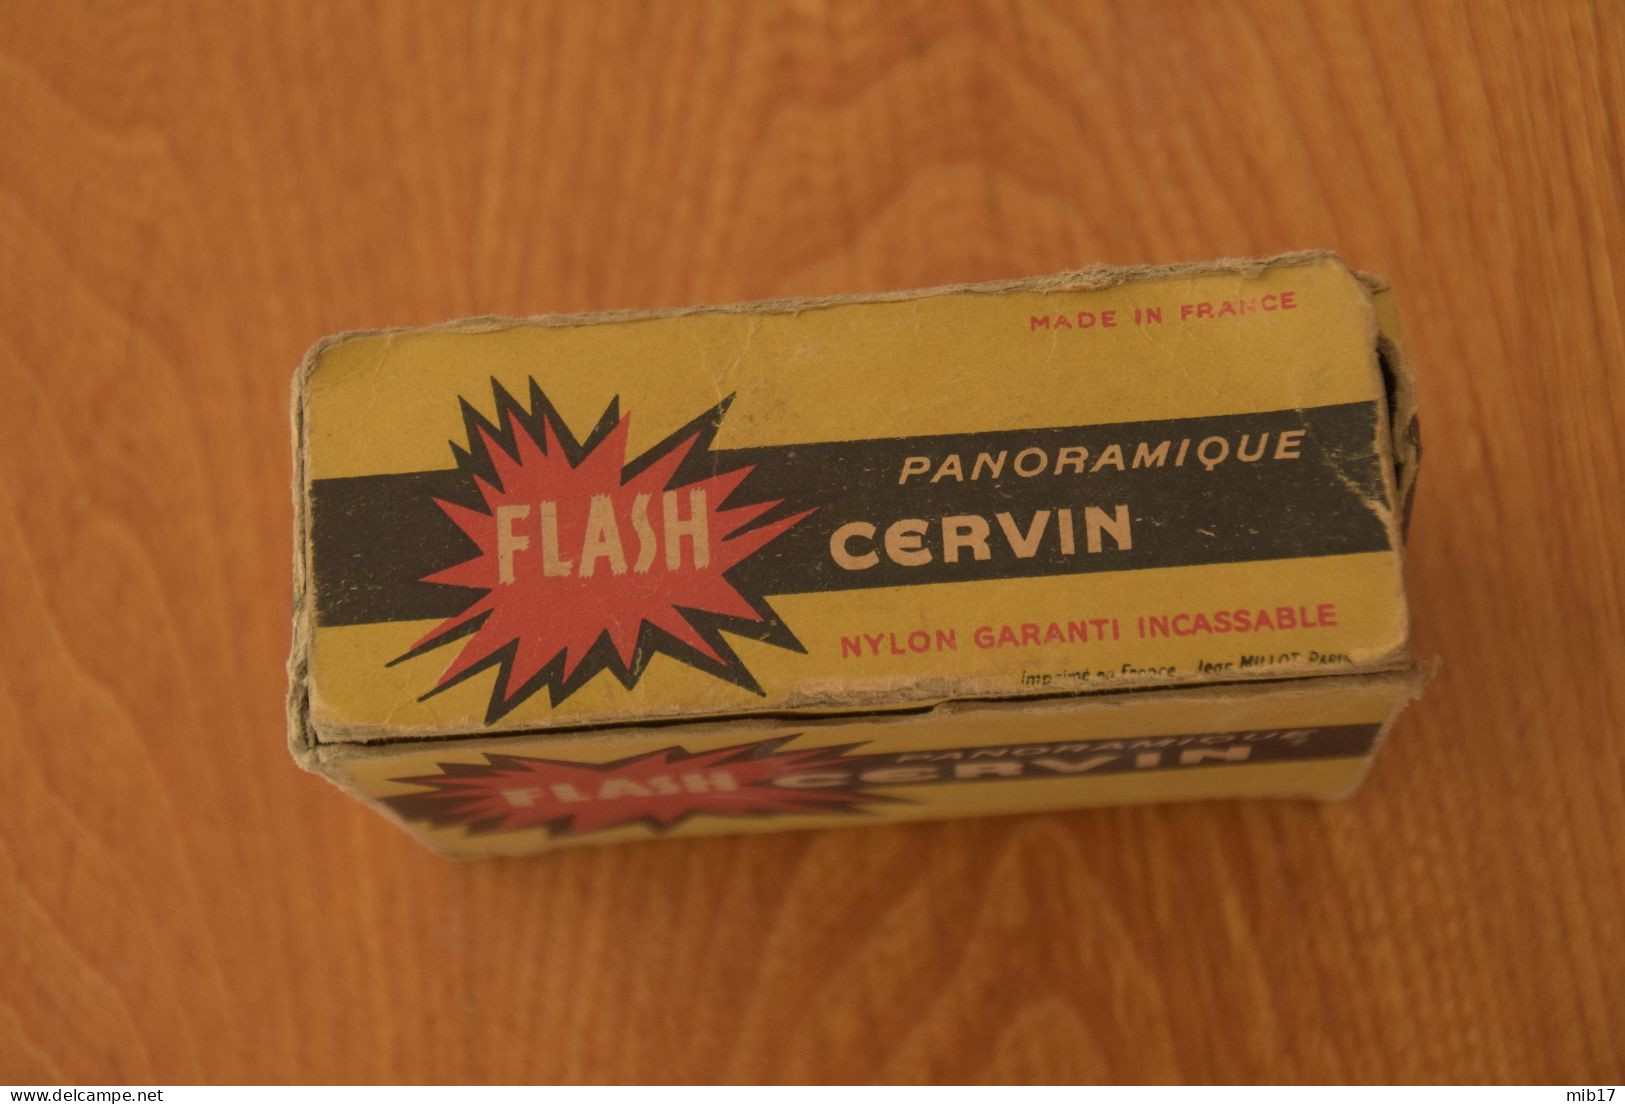 flash ancien CERVIN  panoramique avec boite - accessoire photo